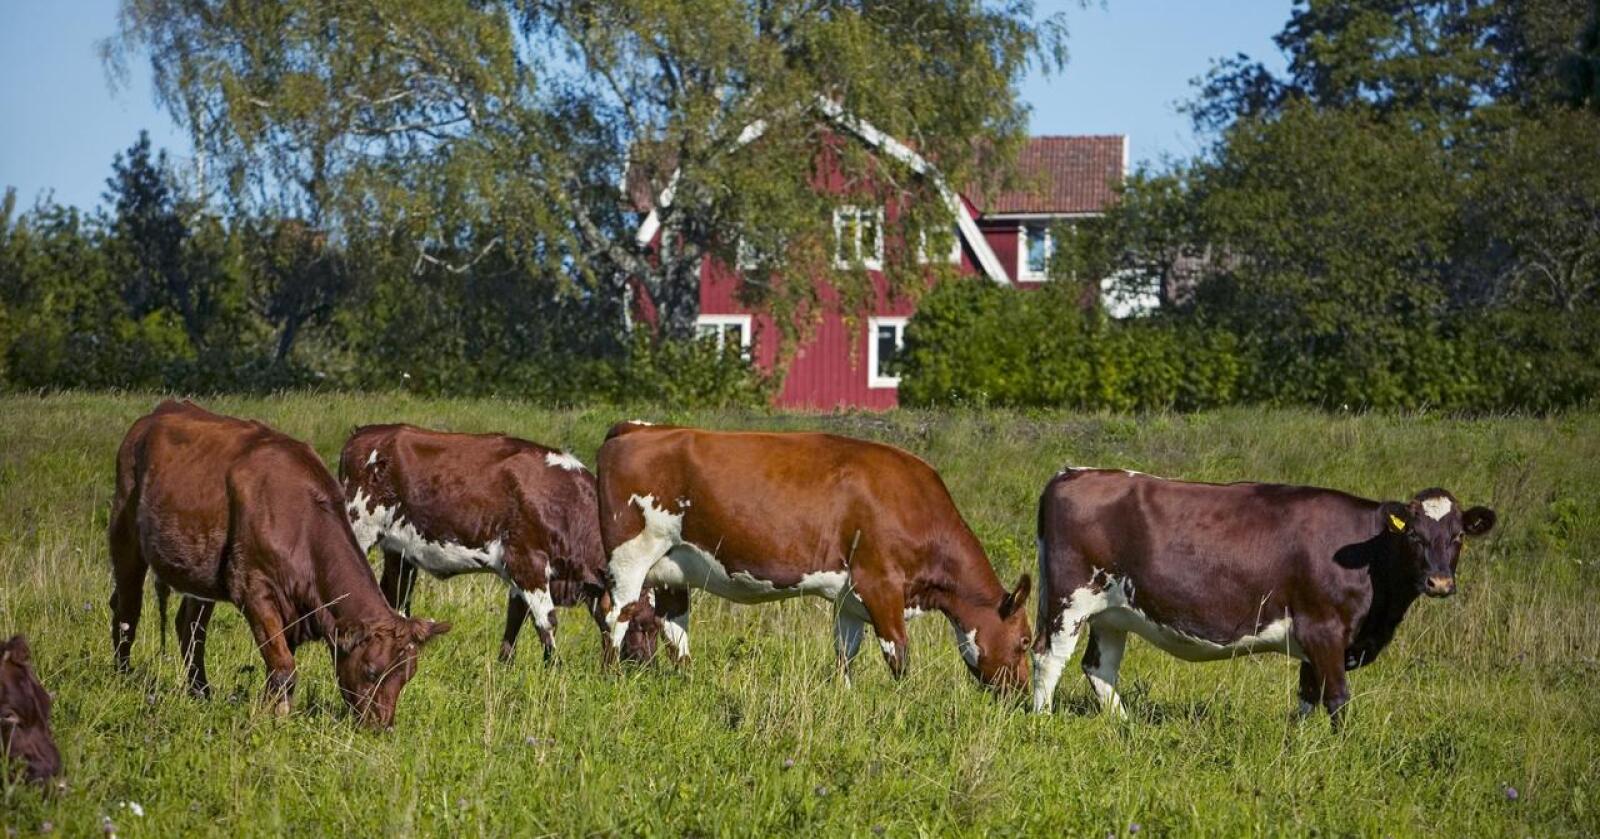 Röd liten stuga vid ko: Svensk landbruk kan bli klasset som "ikke bærekraftig" av EU-systemet. Foto: Jann Lipka/Svensk Mjölk